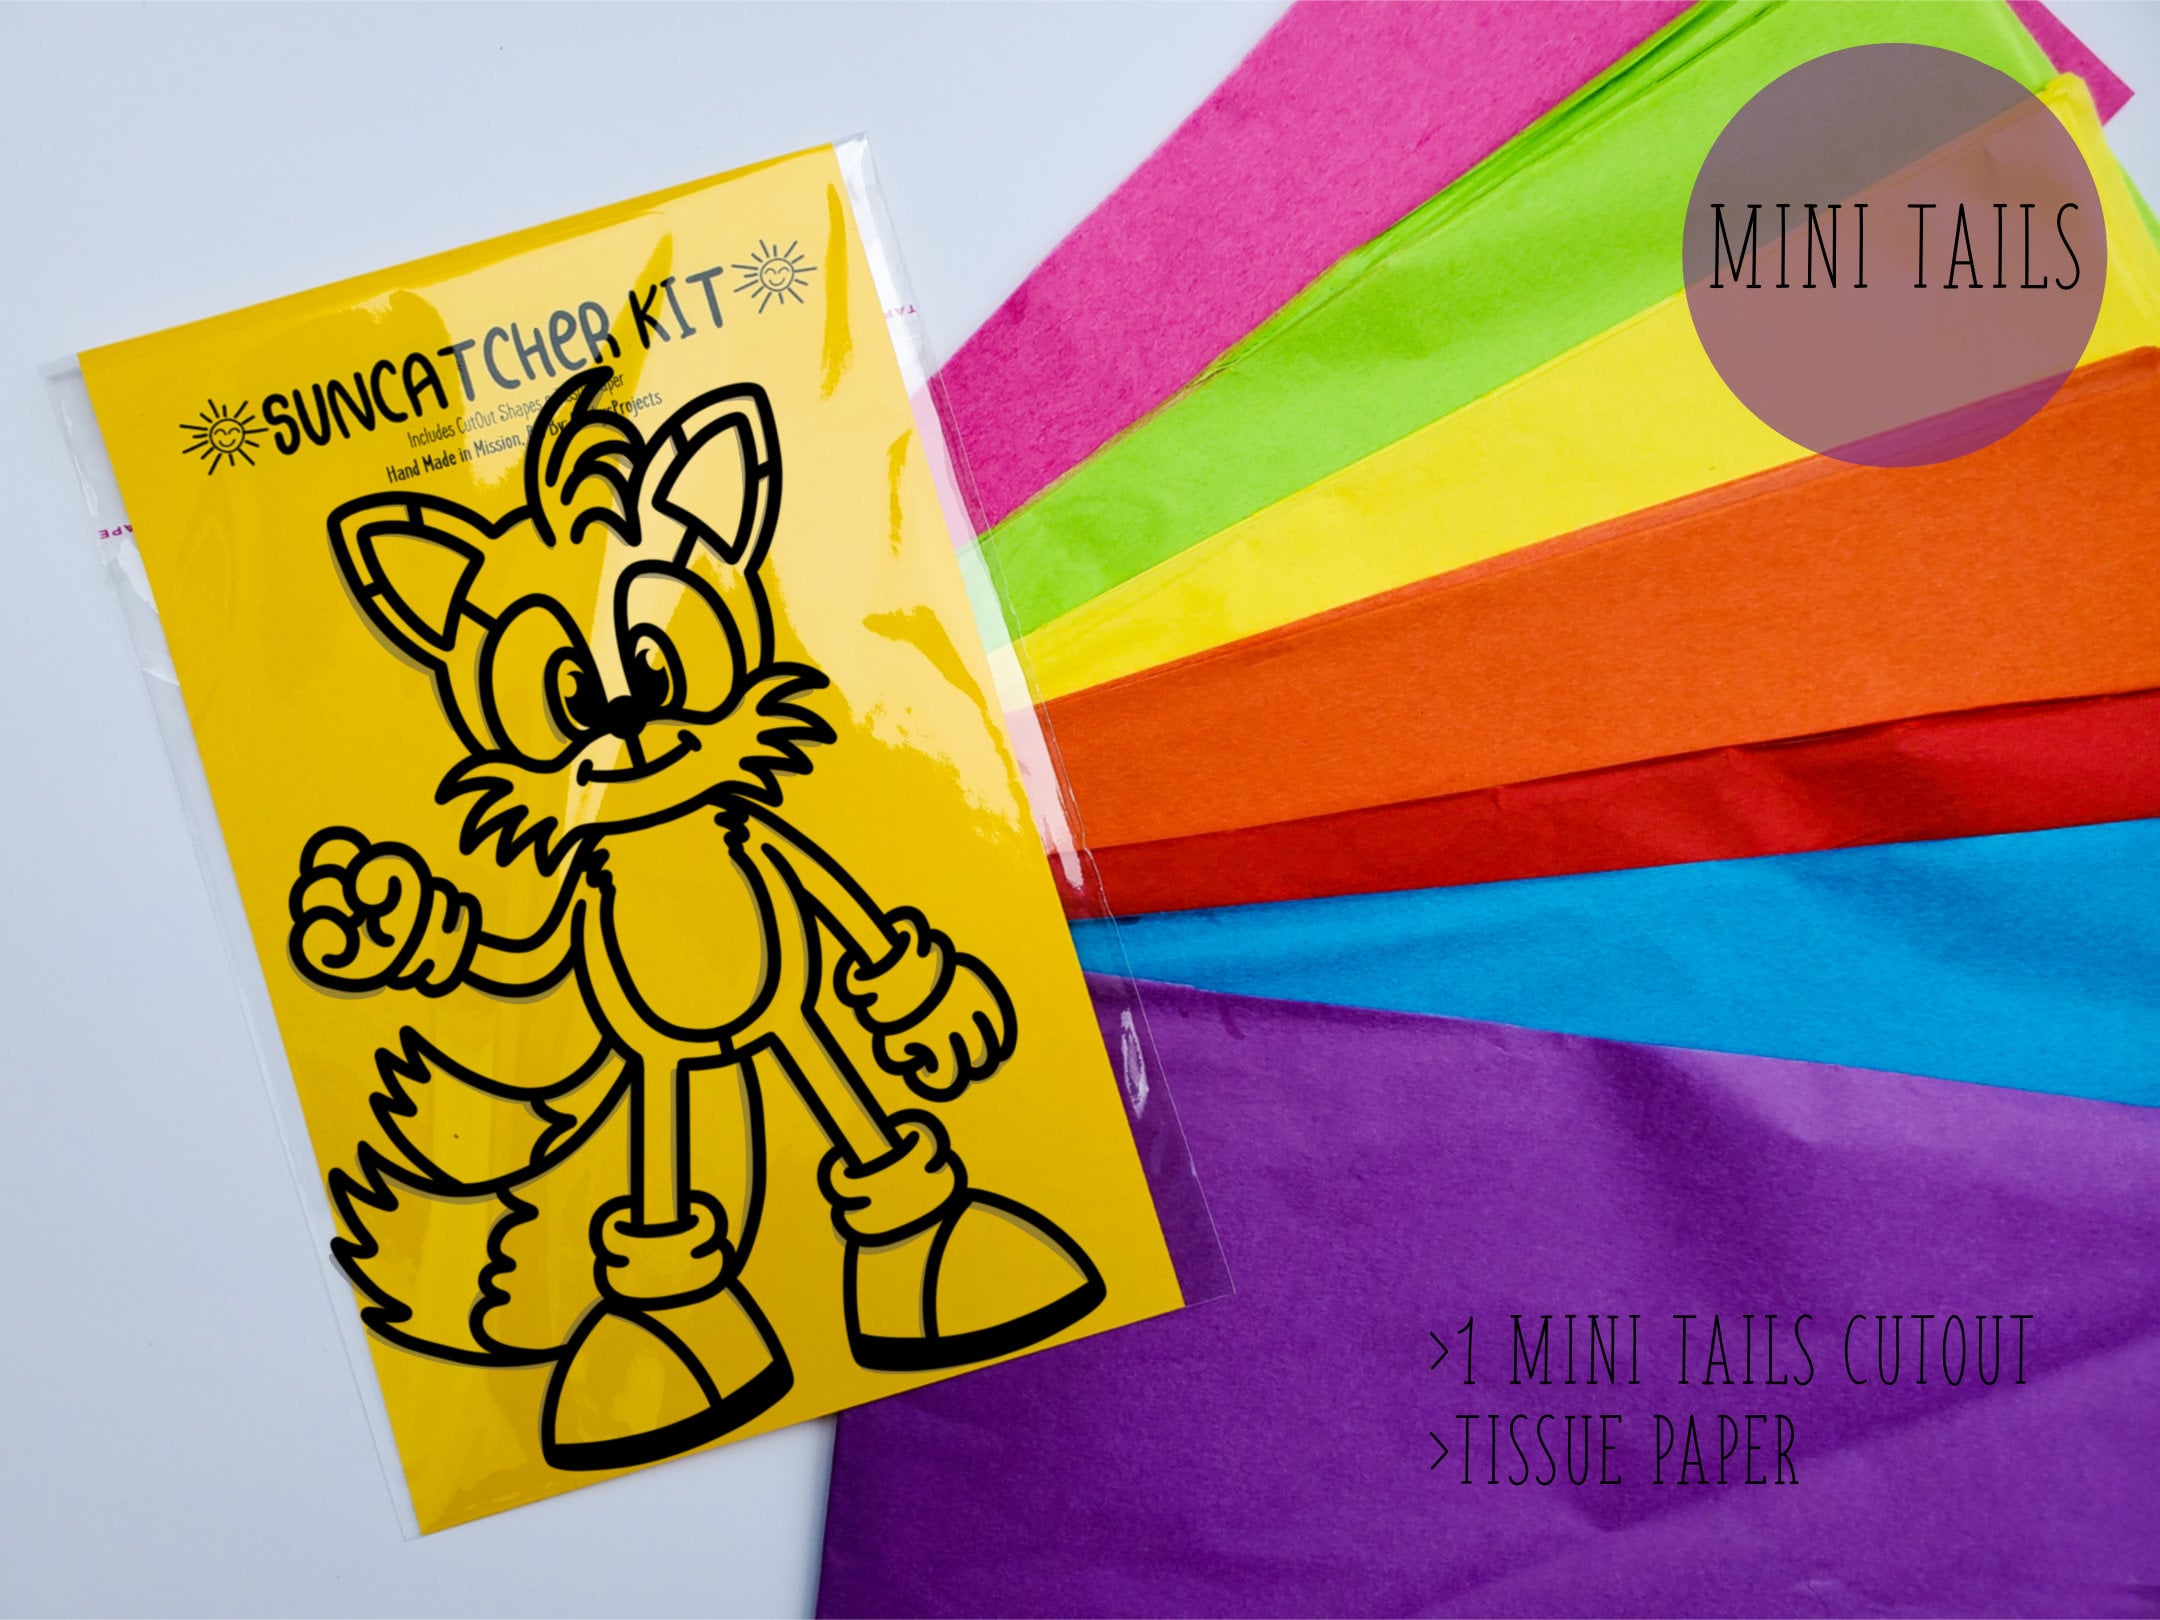 Mini Sonic Suncatcher Kit Kids Craft Kit Stained Glass Tissue